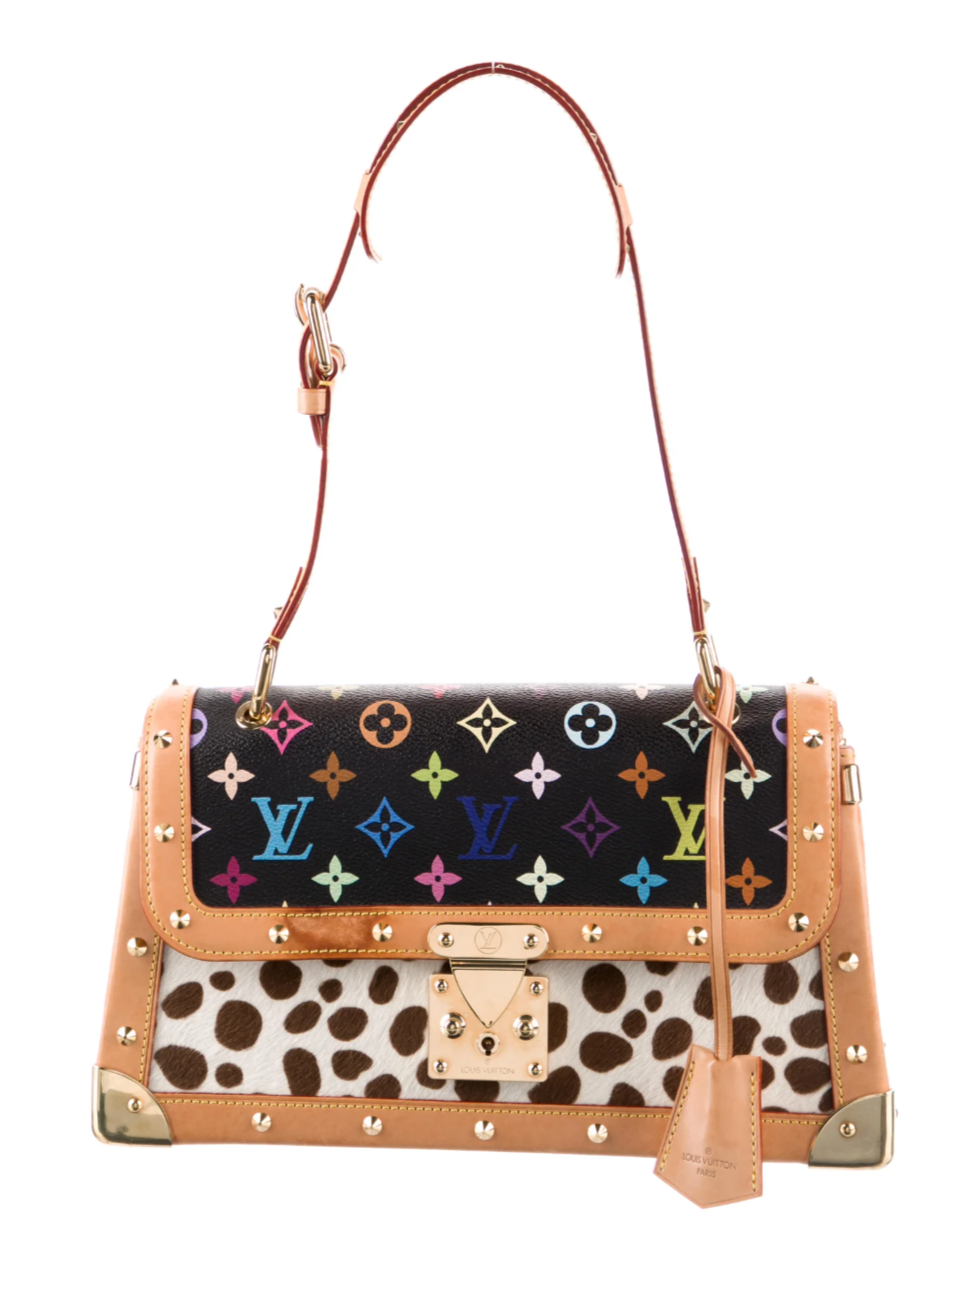 The Louis Vuitton Dalmation Bag. : ( Blahhh!!!